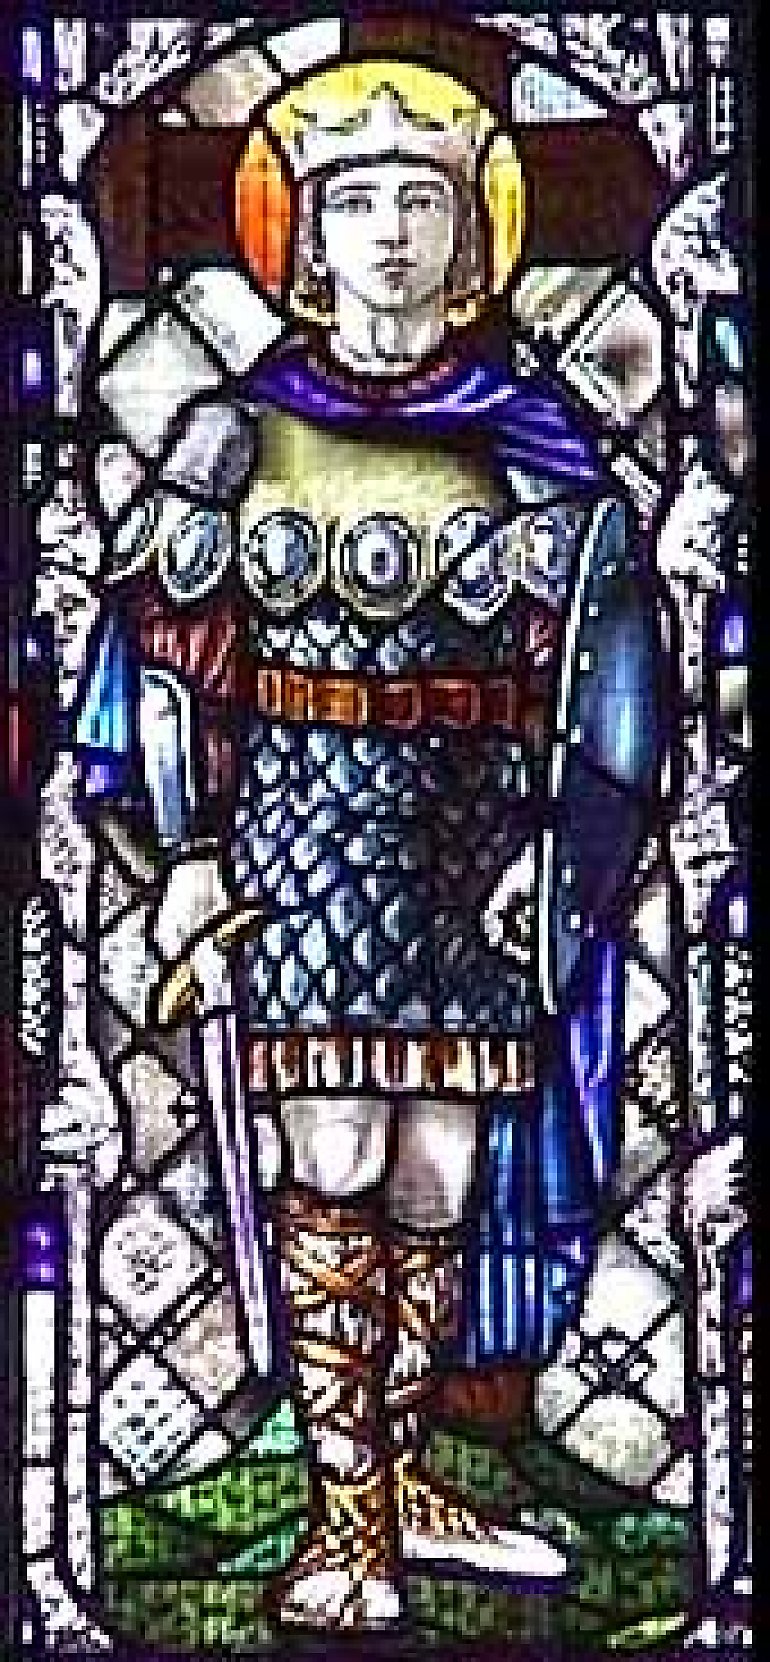 Święty Oswald, król i męczennik - patron dnia (05.08)